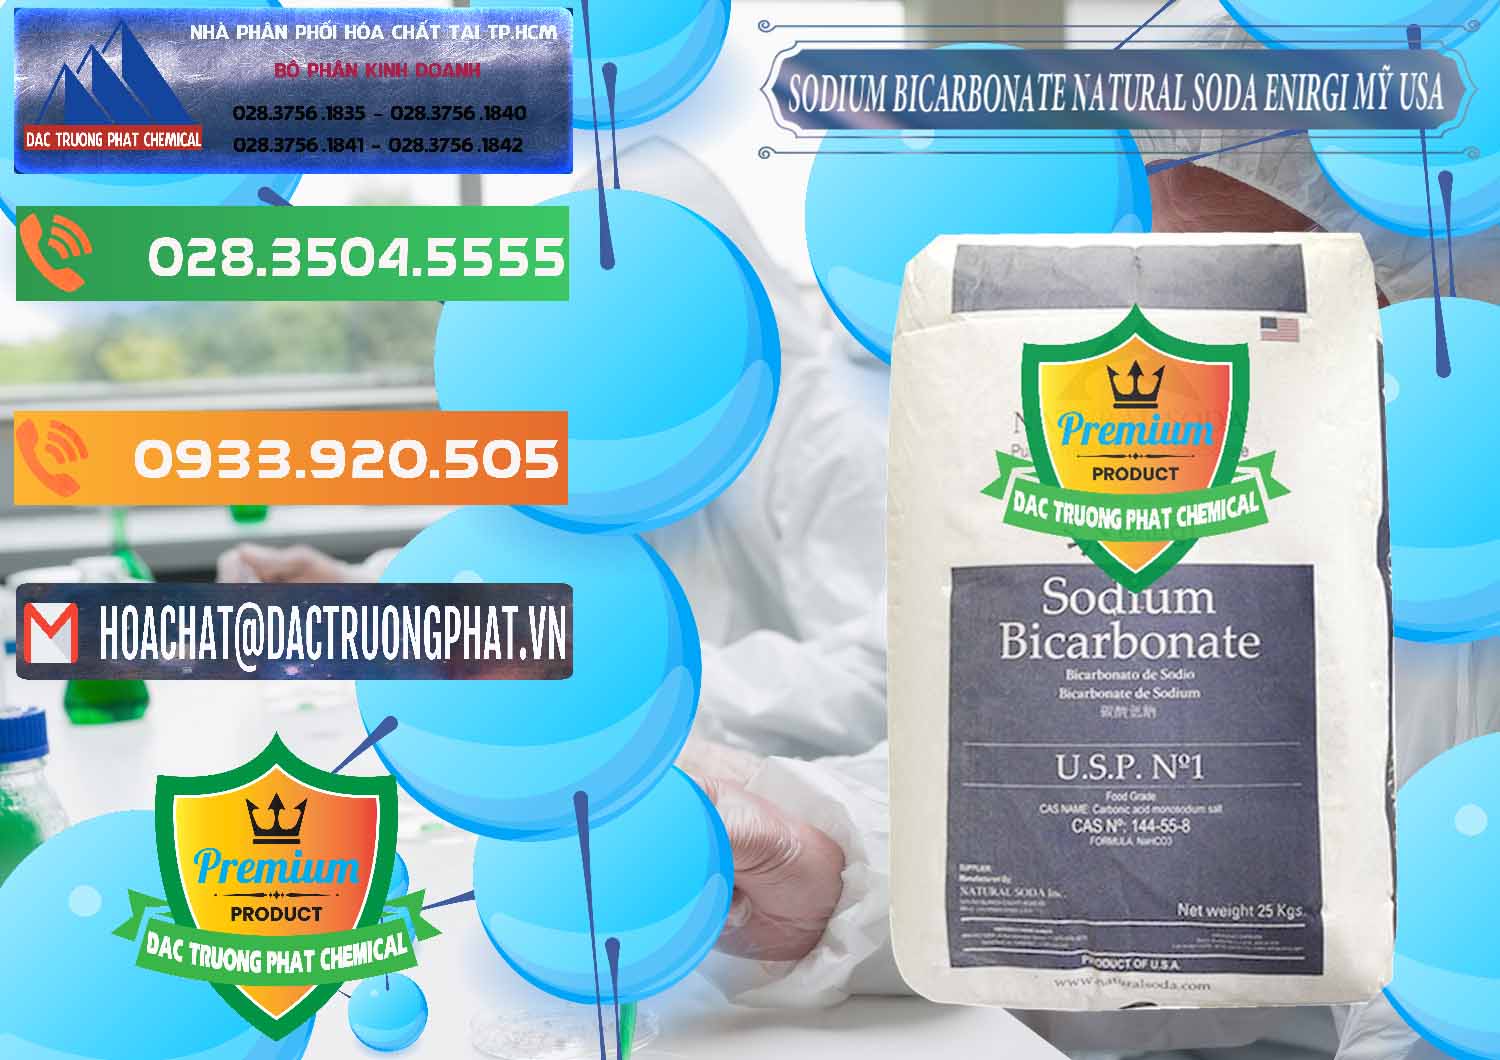 Đơn vị nhập khẩu ( bán ) Sodium Bicarbonate – Bicar NaHCO3 Food Grade Natural Soda Enirgi Mỹ USA - 0257 - Chuyên cung cấp - phân phối hóa chất tại TP.HCM - hoachatxulynuoc.com.vn